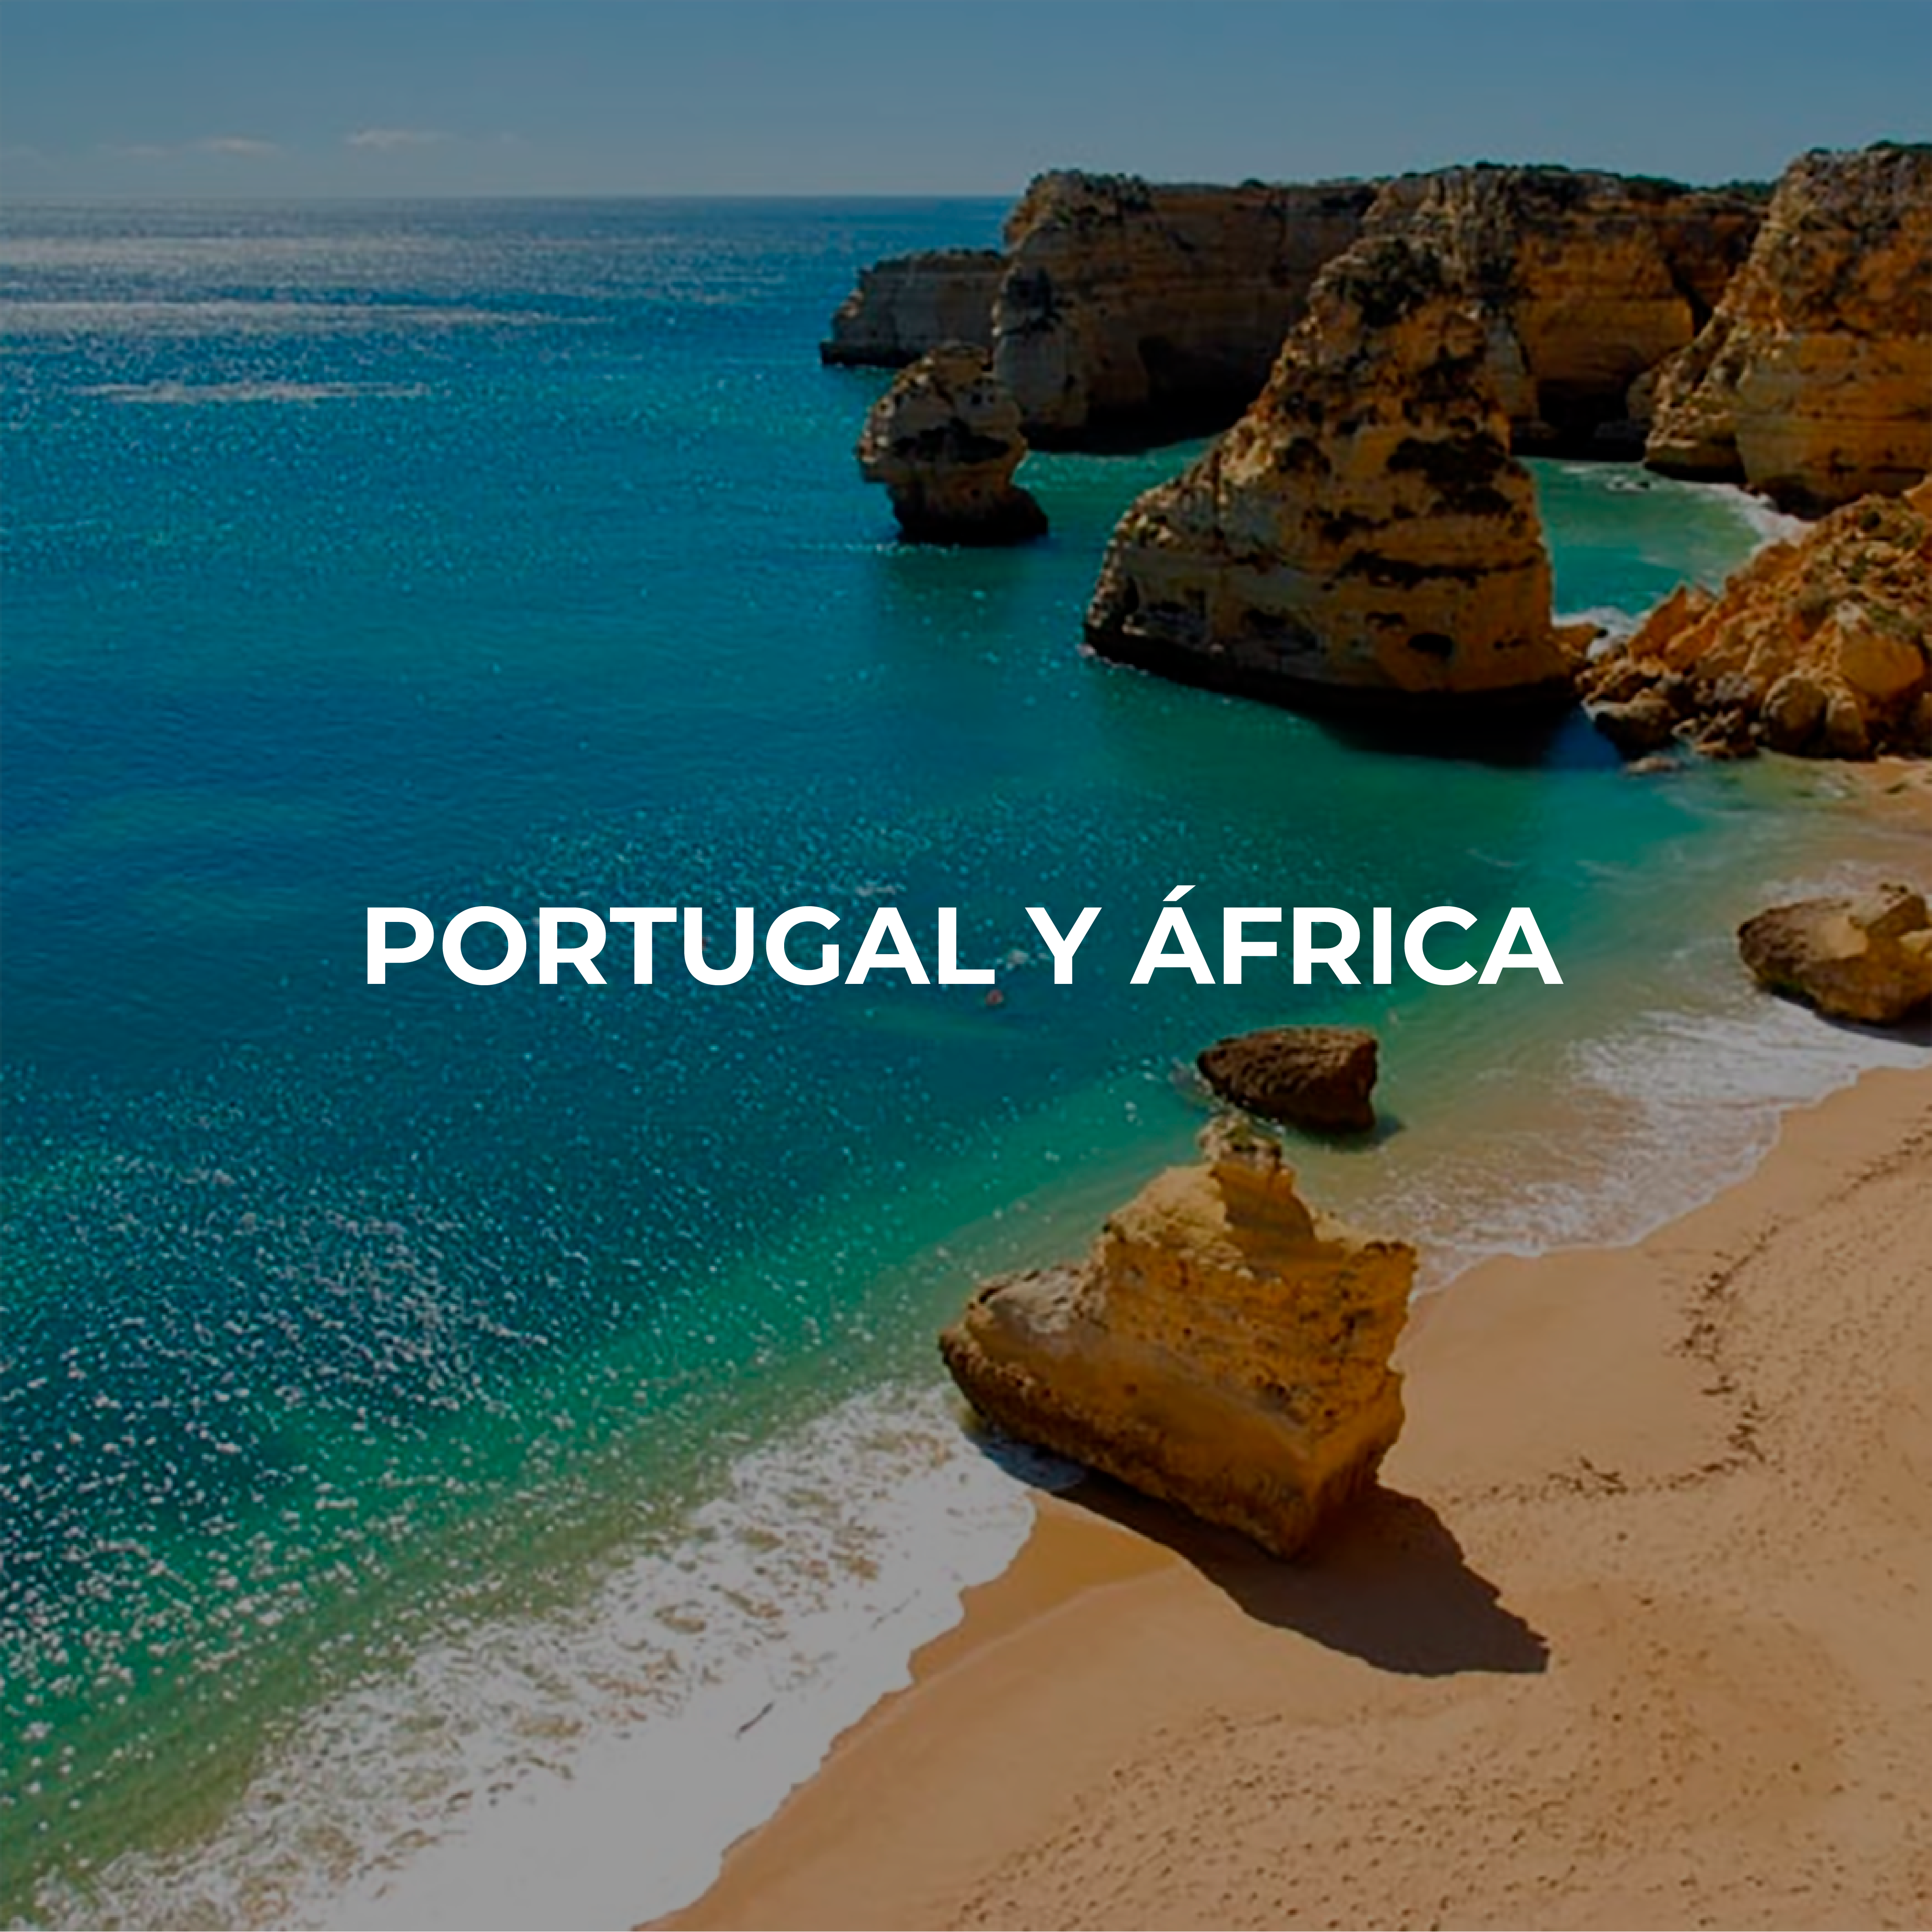 PORTUGAL Y ÁFRICA